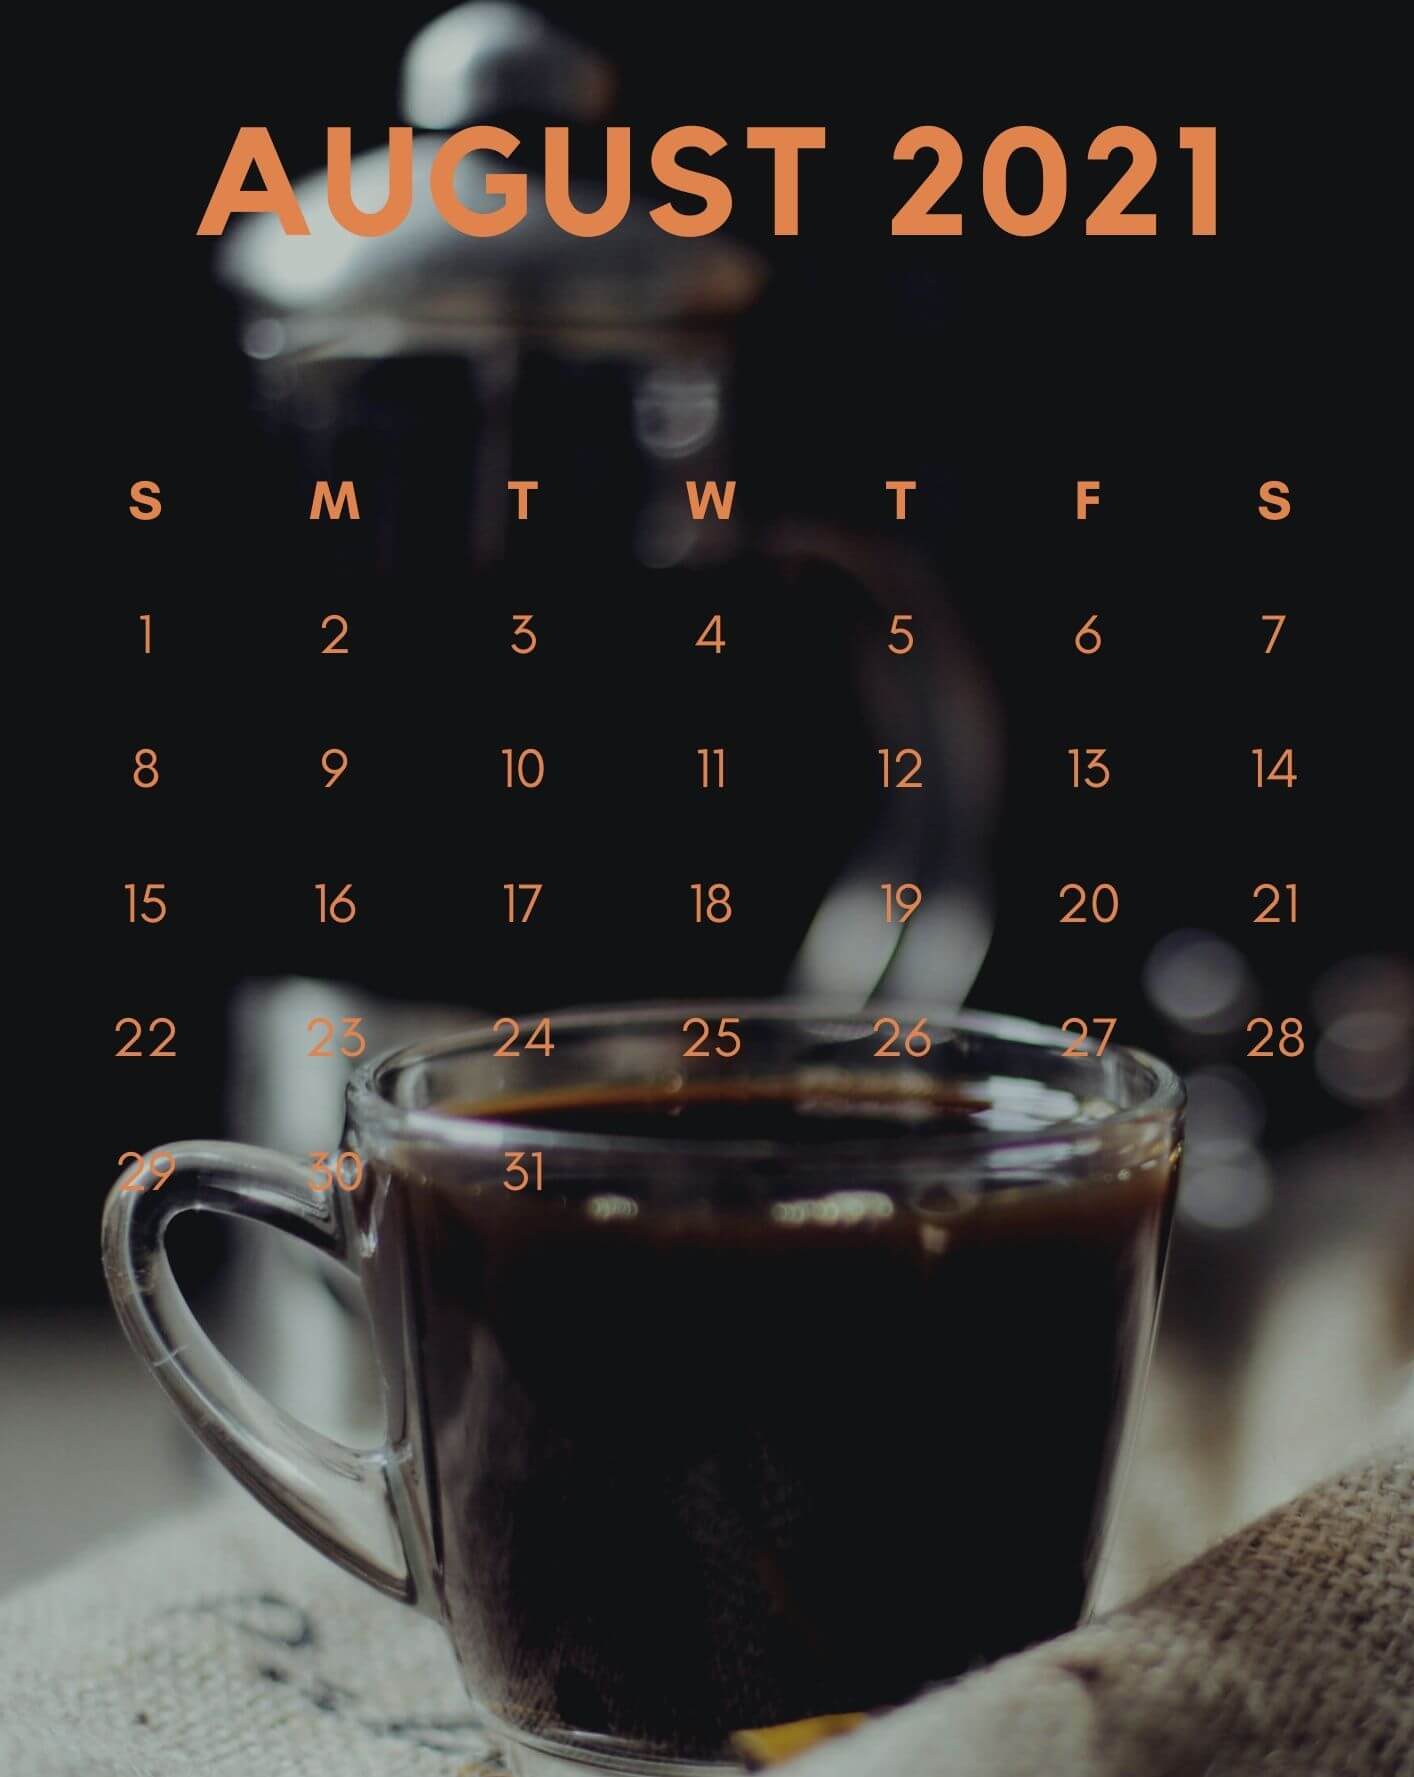 August 2021 Calendar Wallpaper for iPhone